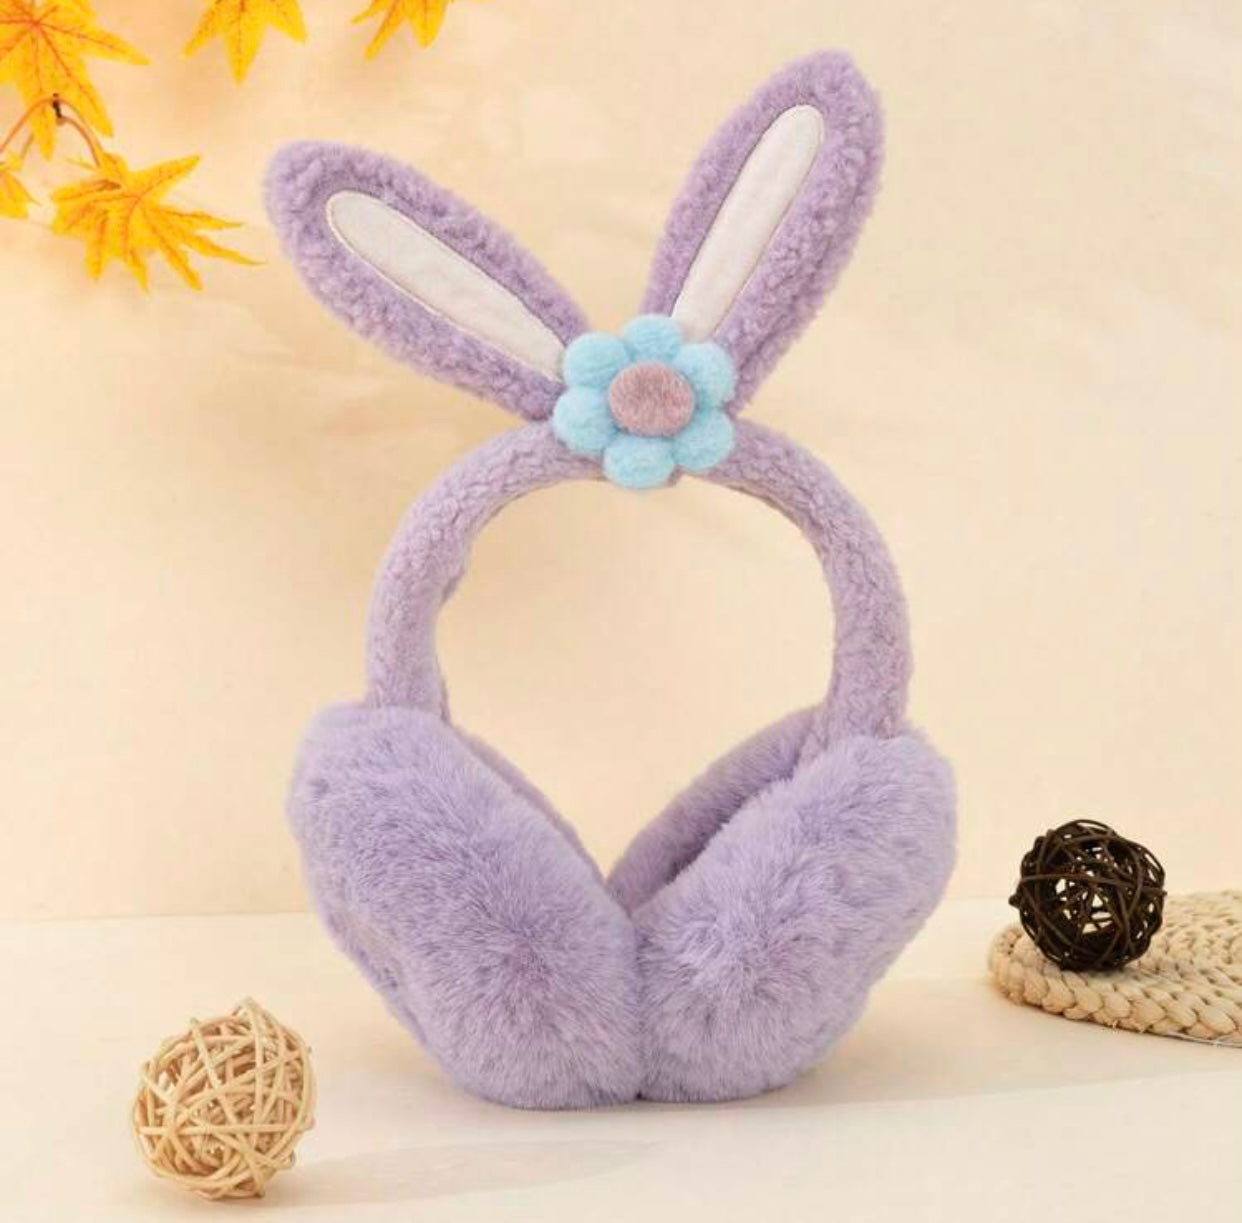 Large Fluffy Ear Muffs, Earmuffs, Purple Bunny Ears with Flower, Kids & Adults